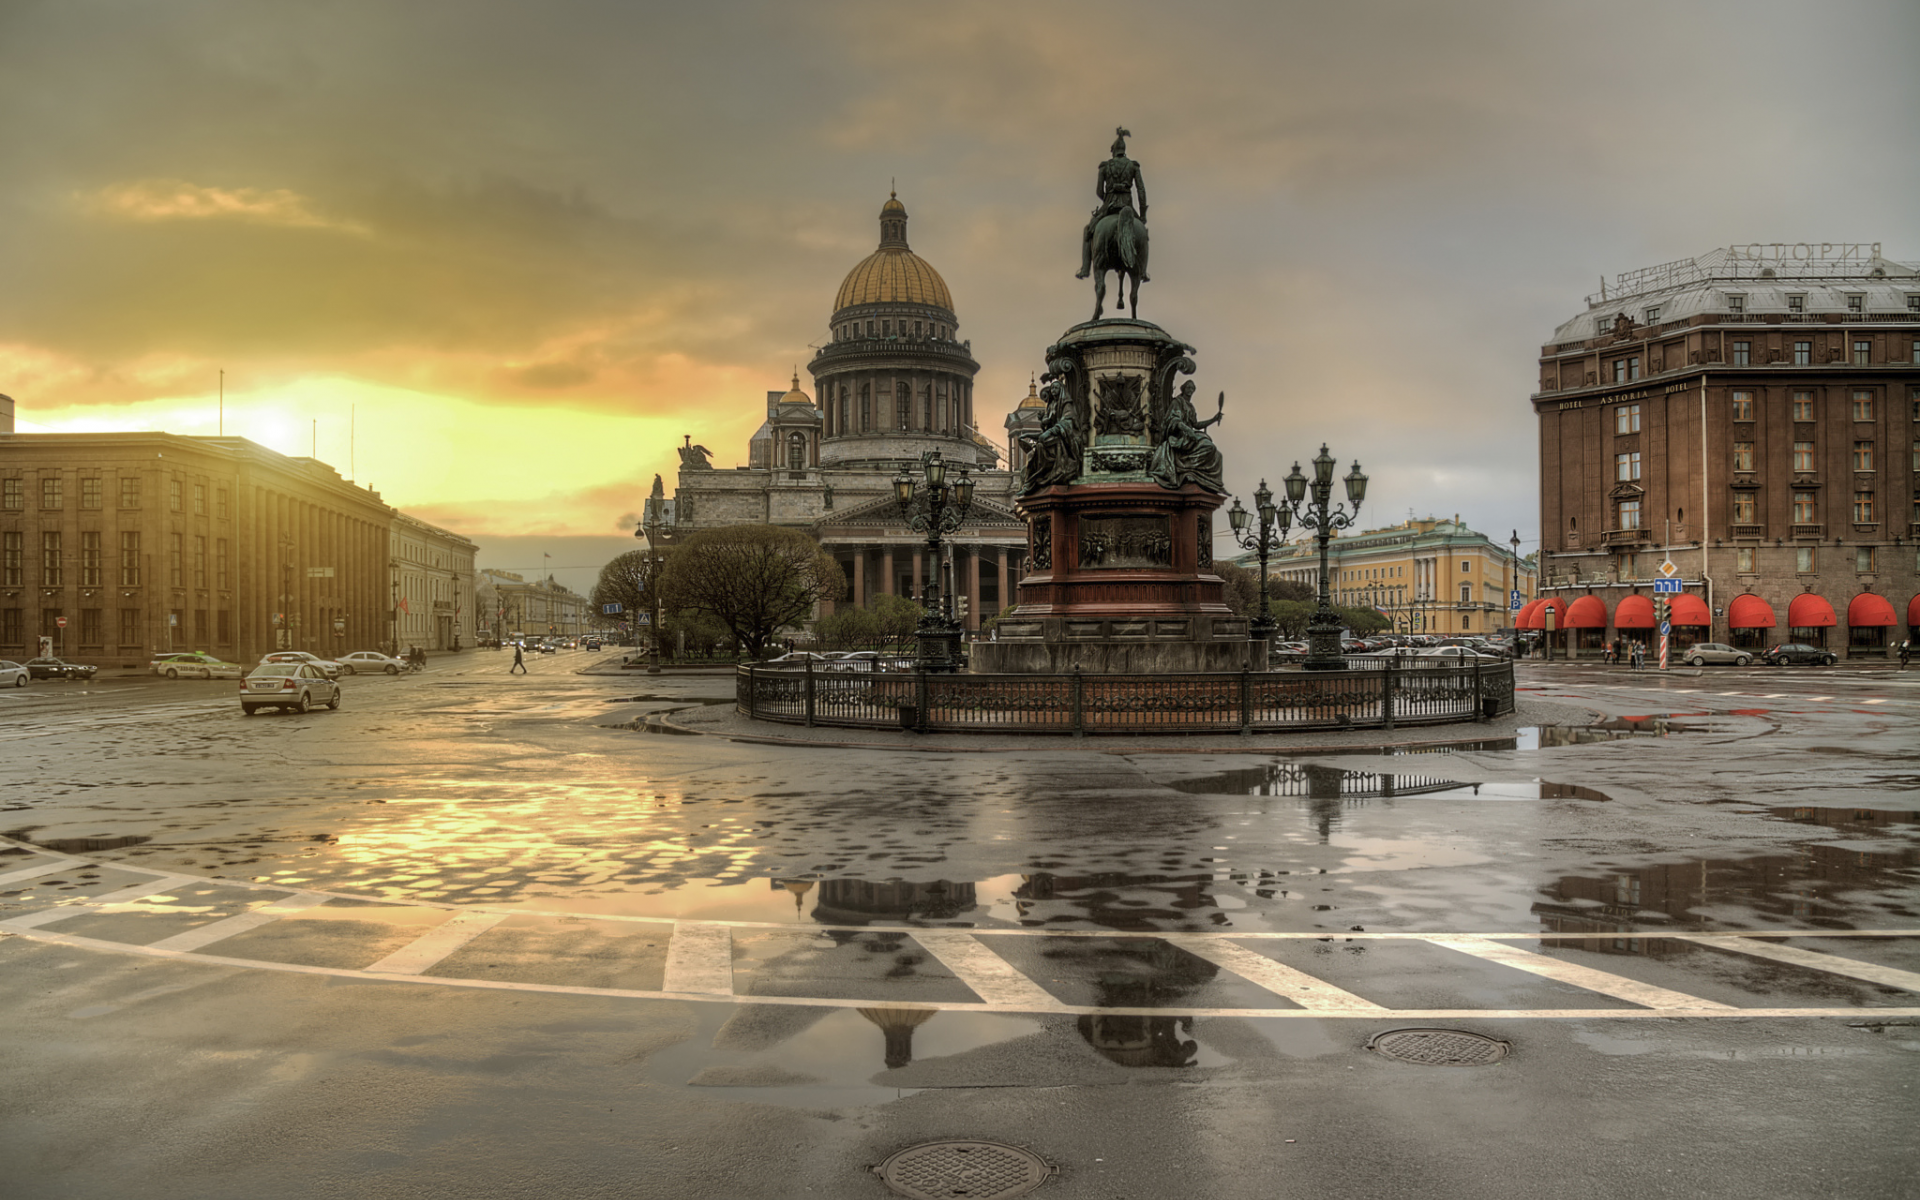 россия, питер, дождь, площадь, памятник, николай 1, исаакиевский собор, лужи